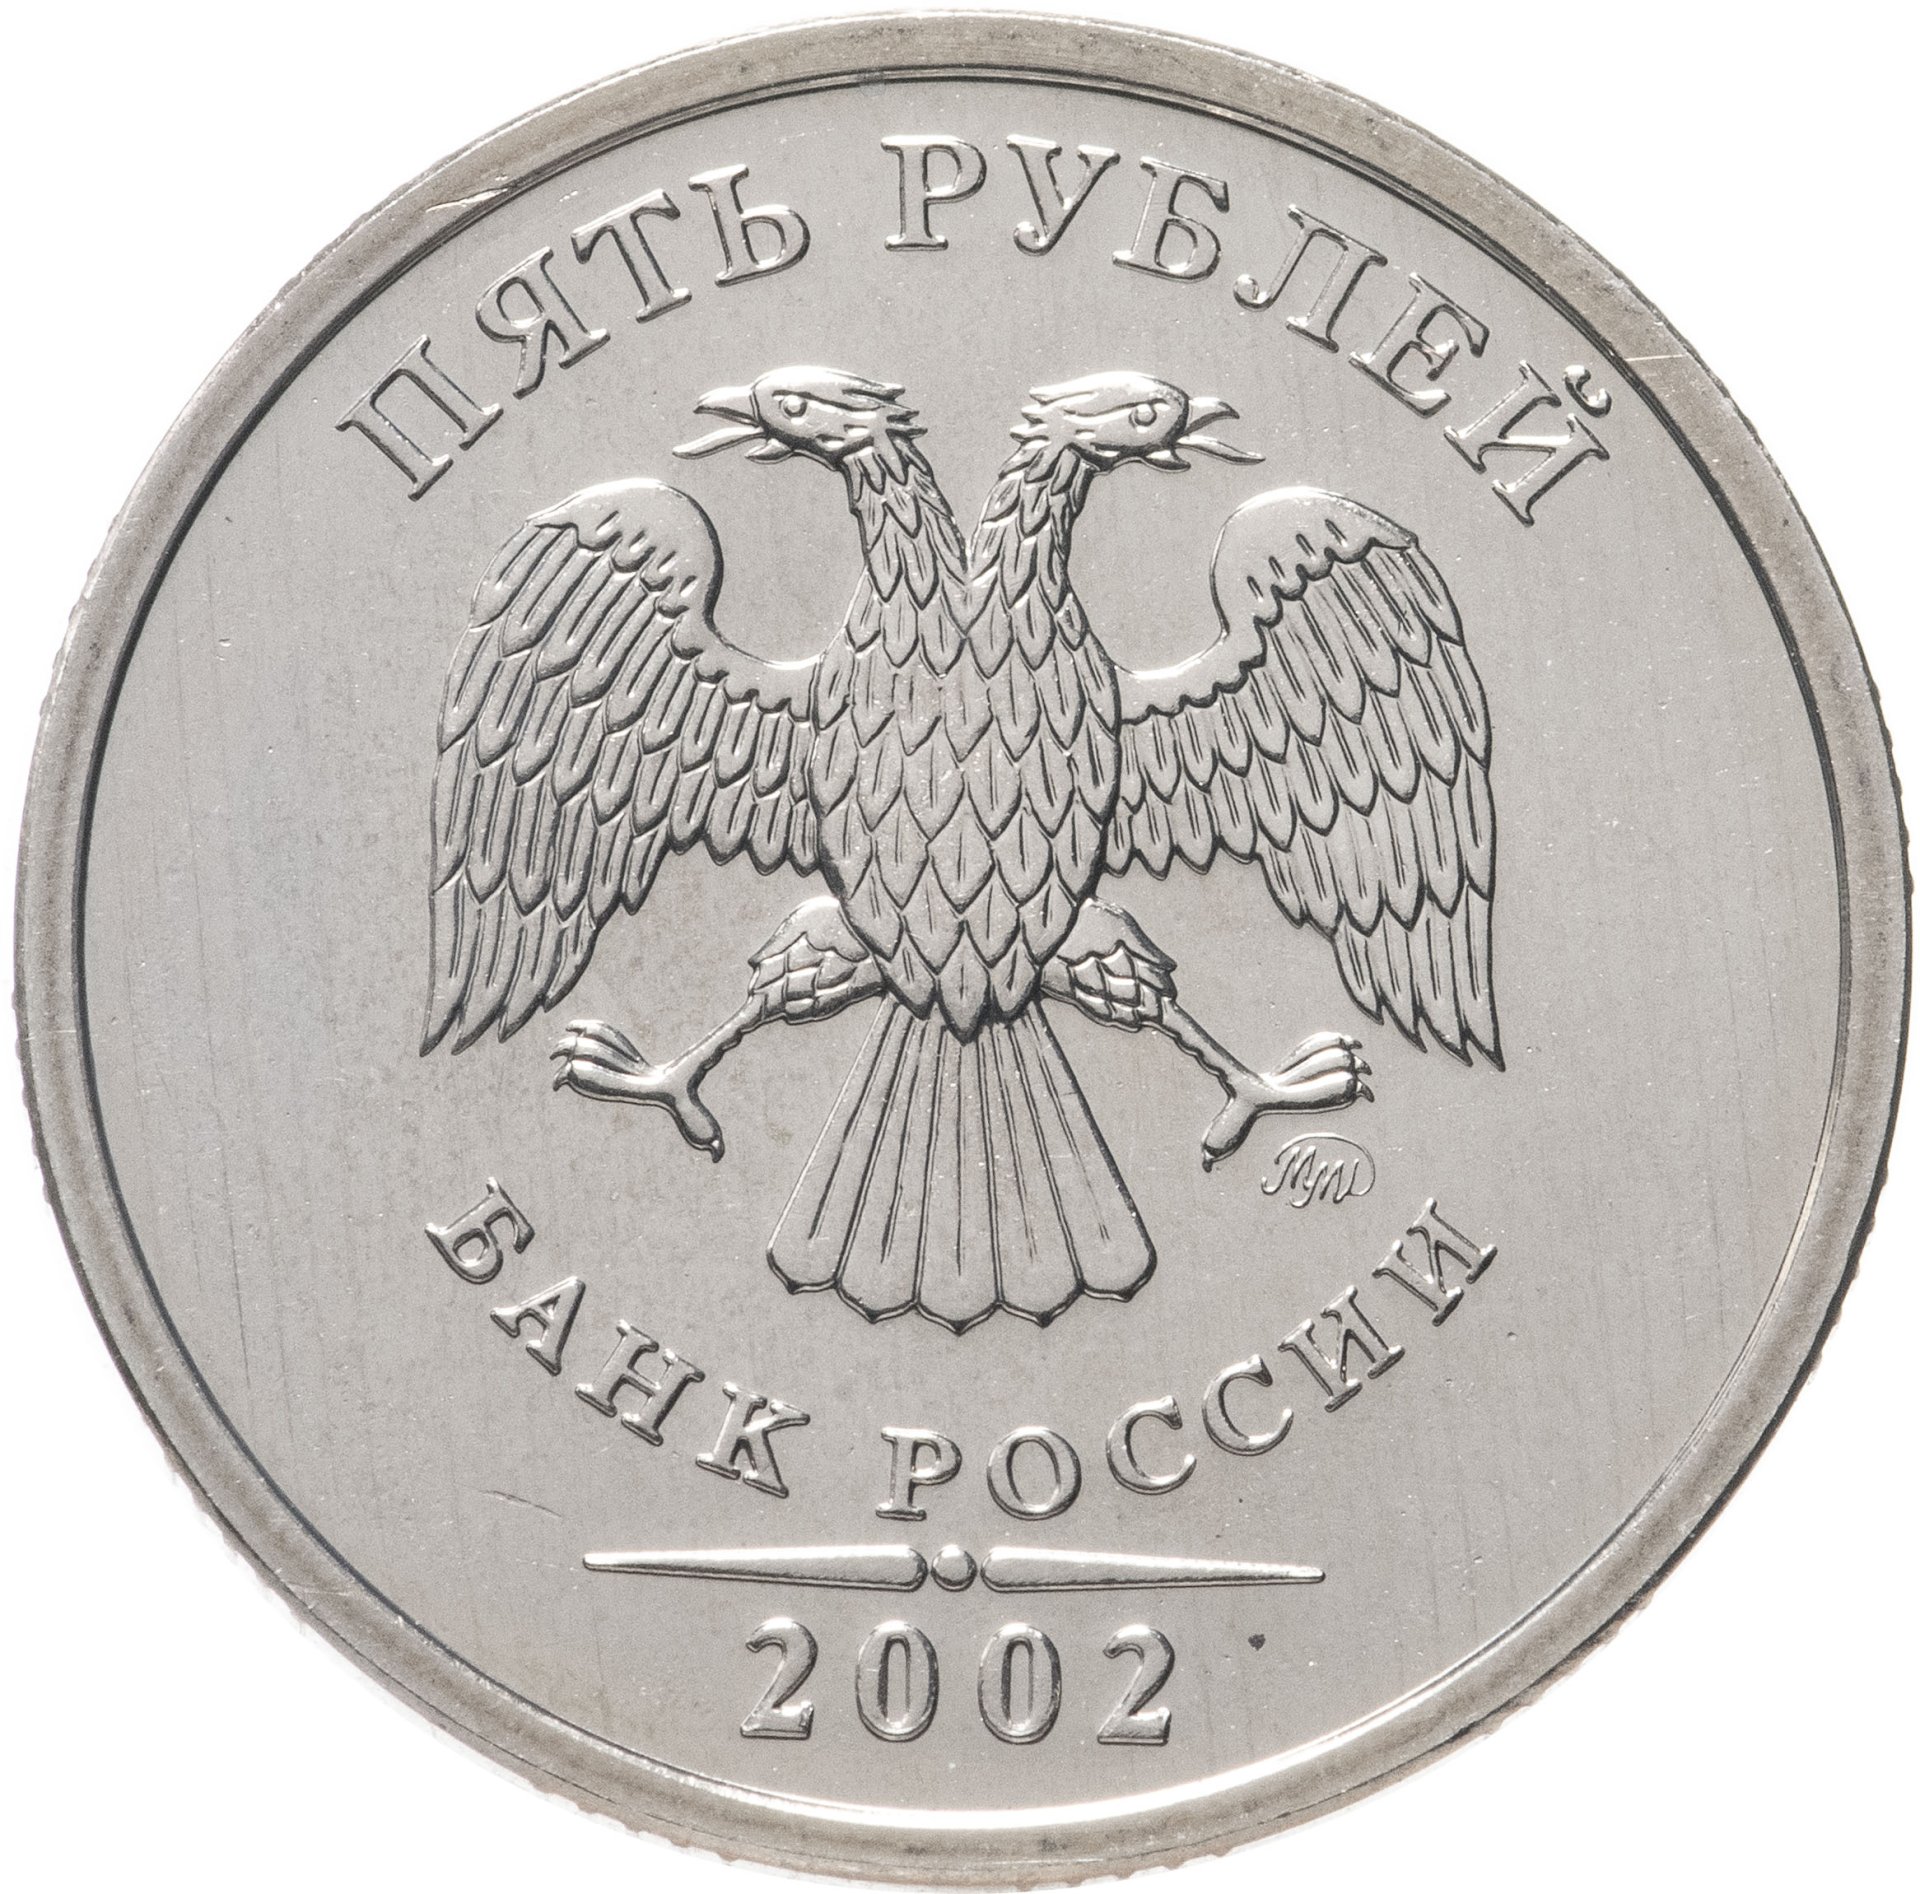 5 рублей орел. Монета 5 рублей 2002 года СПМД. 5 Рублей 2002. Монета а 1 рубль 2002. Аверс 2 рубля.